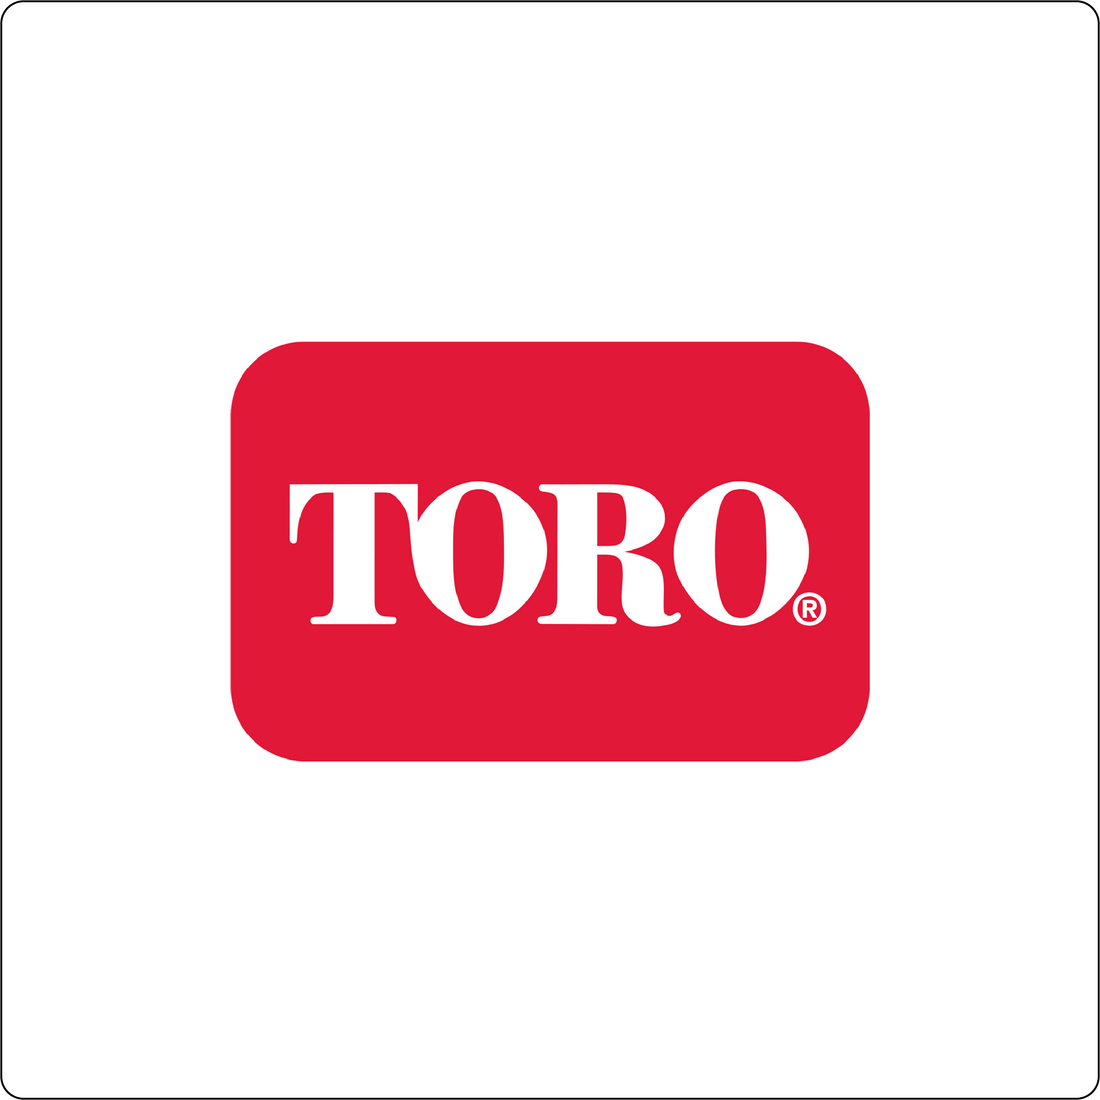  Toro®